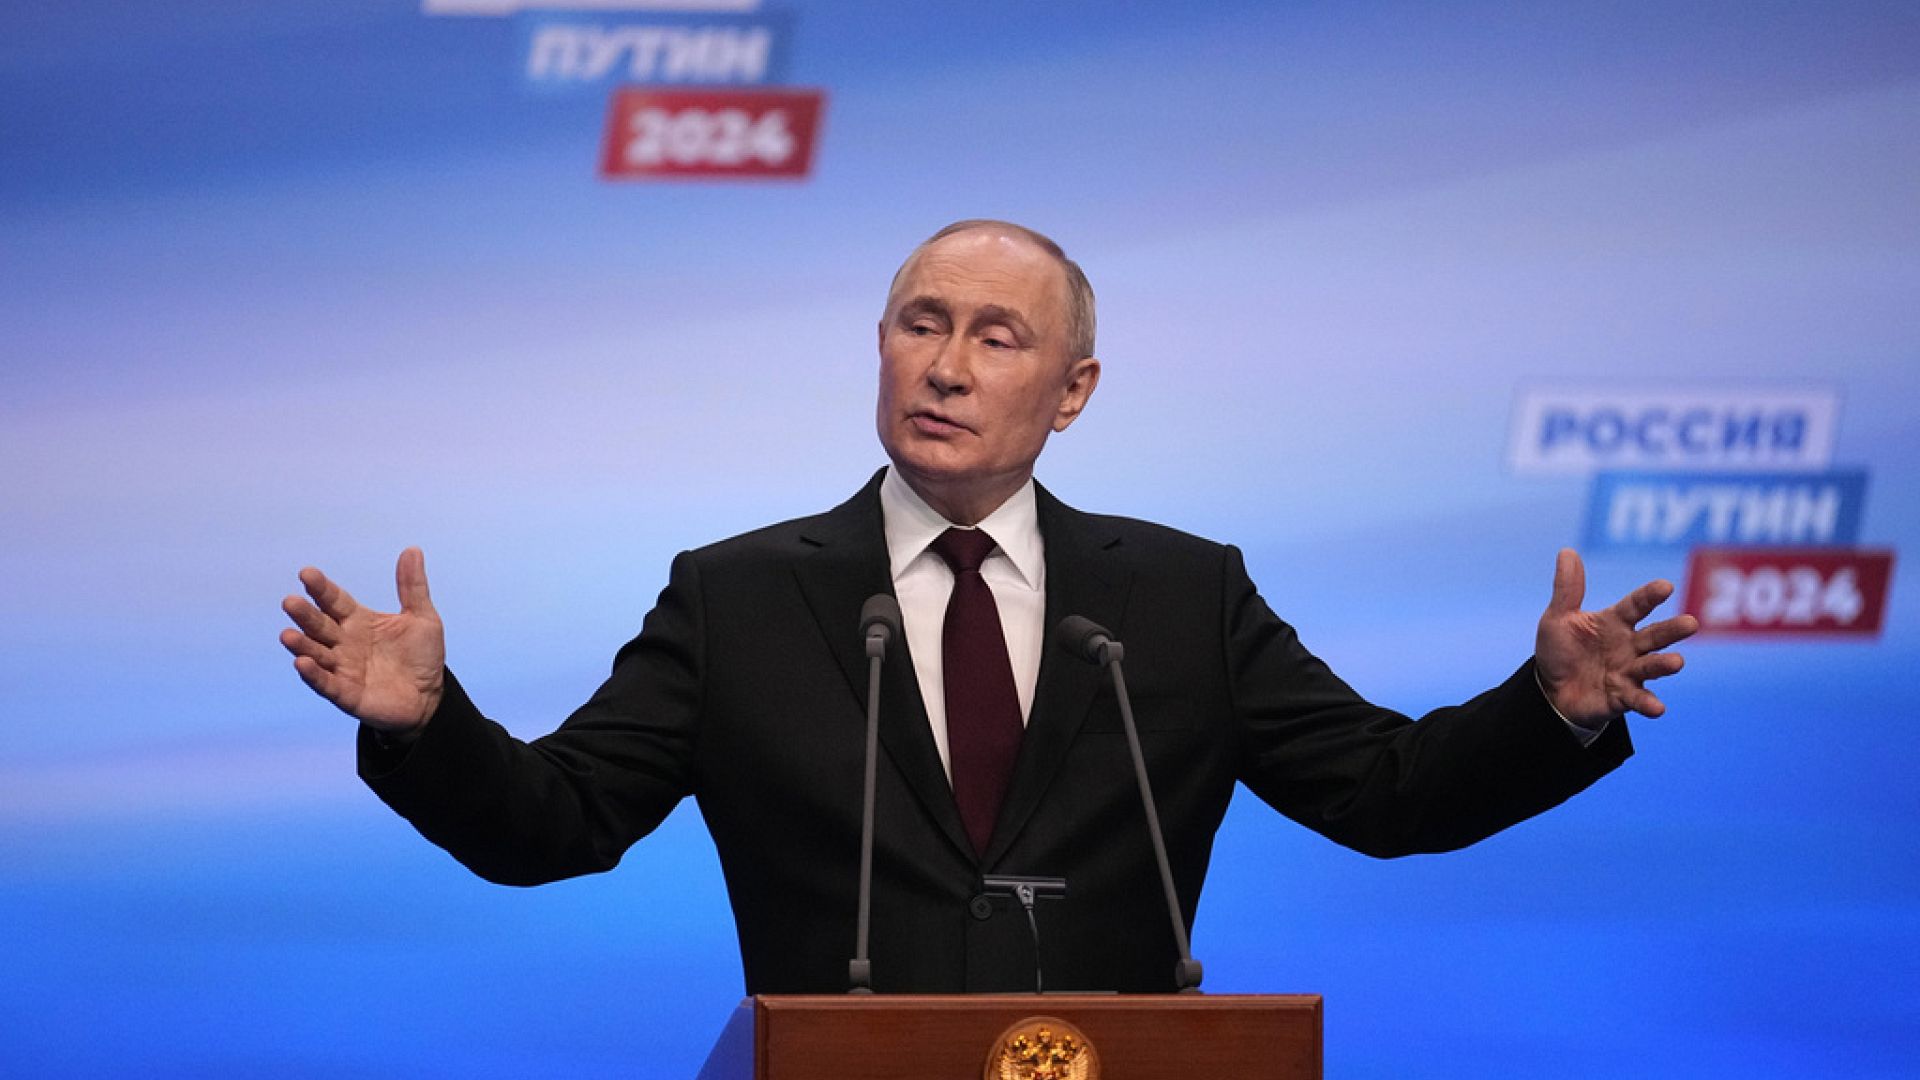 Putin ciddi bir rakibinin olmadığı yarışta seçimi açık farkla kazandı